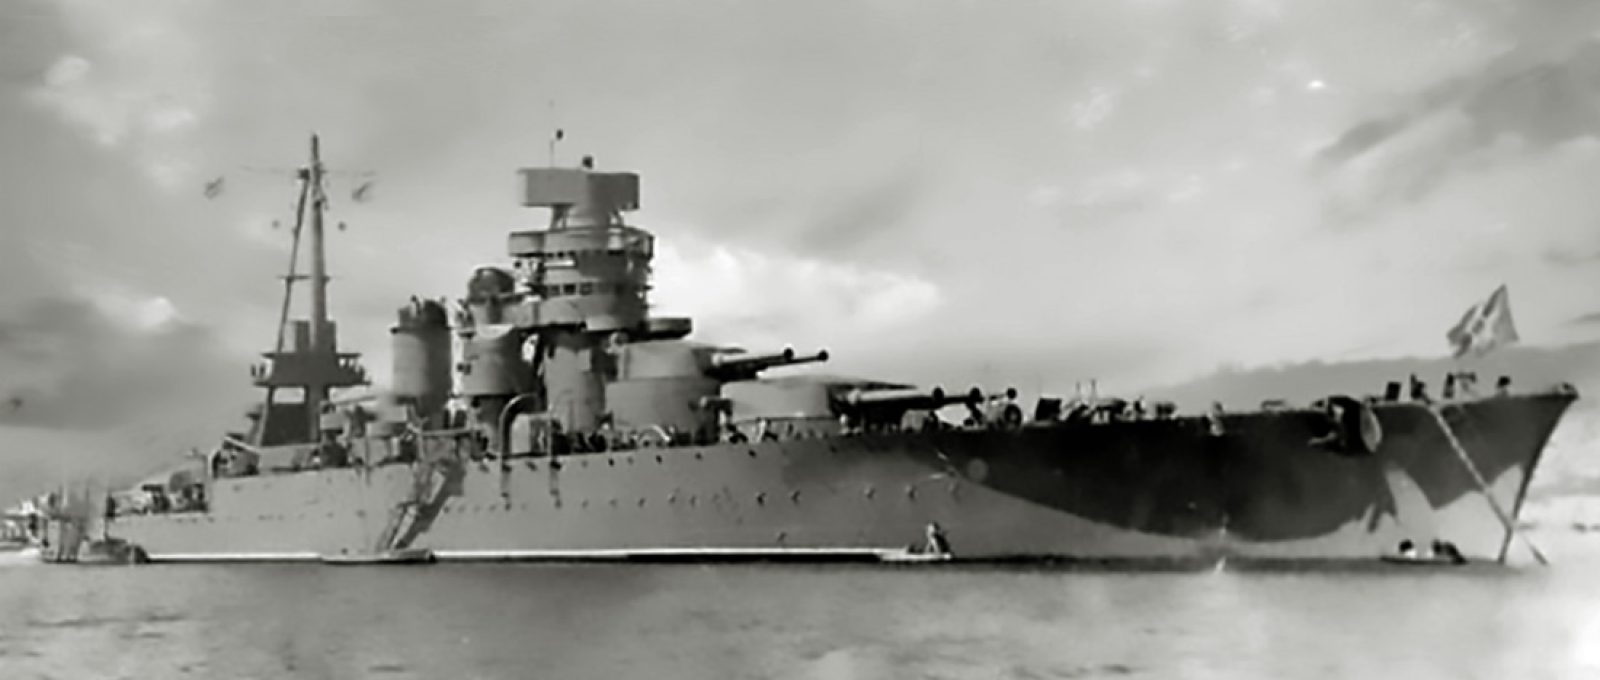 O Novorossiysk foi peça central em manobras de combate naval no Mar Negro três vezes em 1955, antes da explosão em outubro que o afundou com muitos tripulantes (Domínio Público).